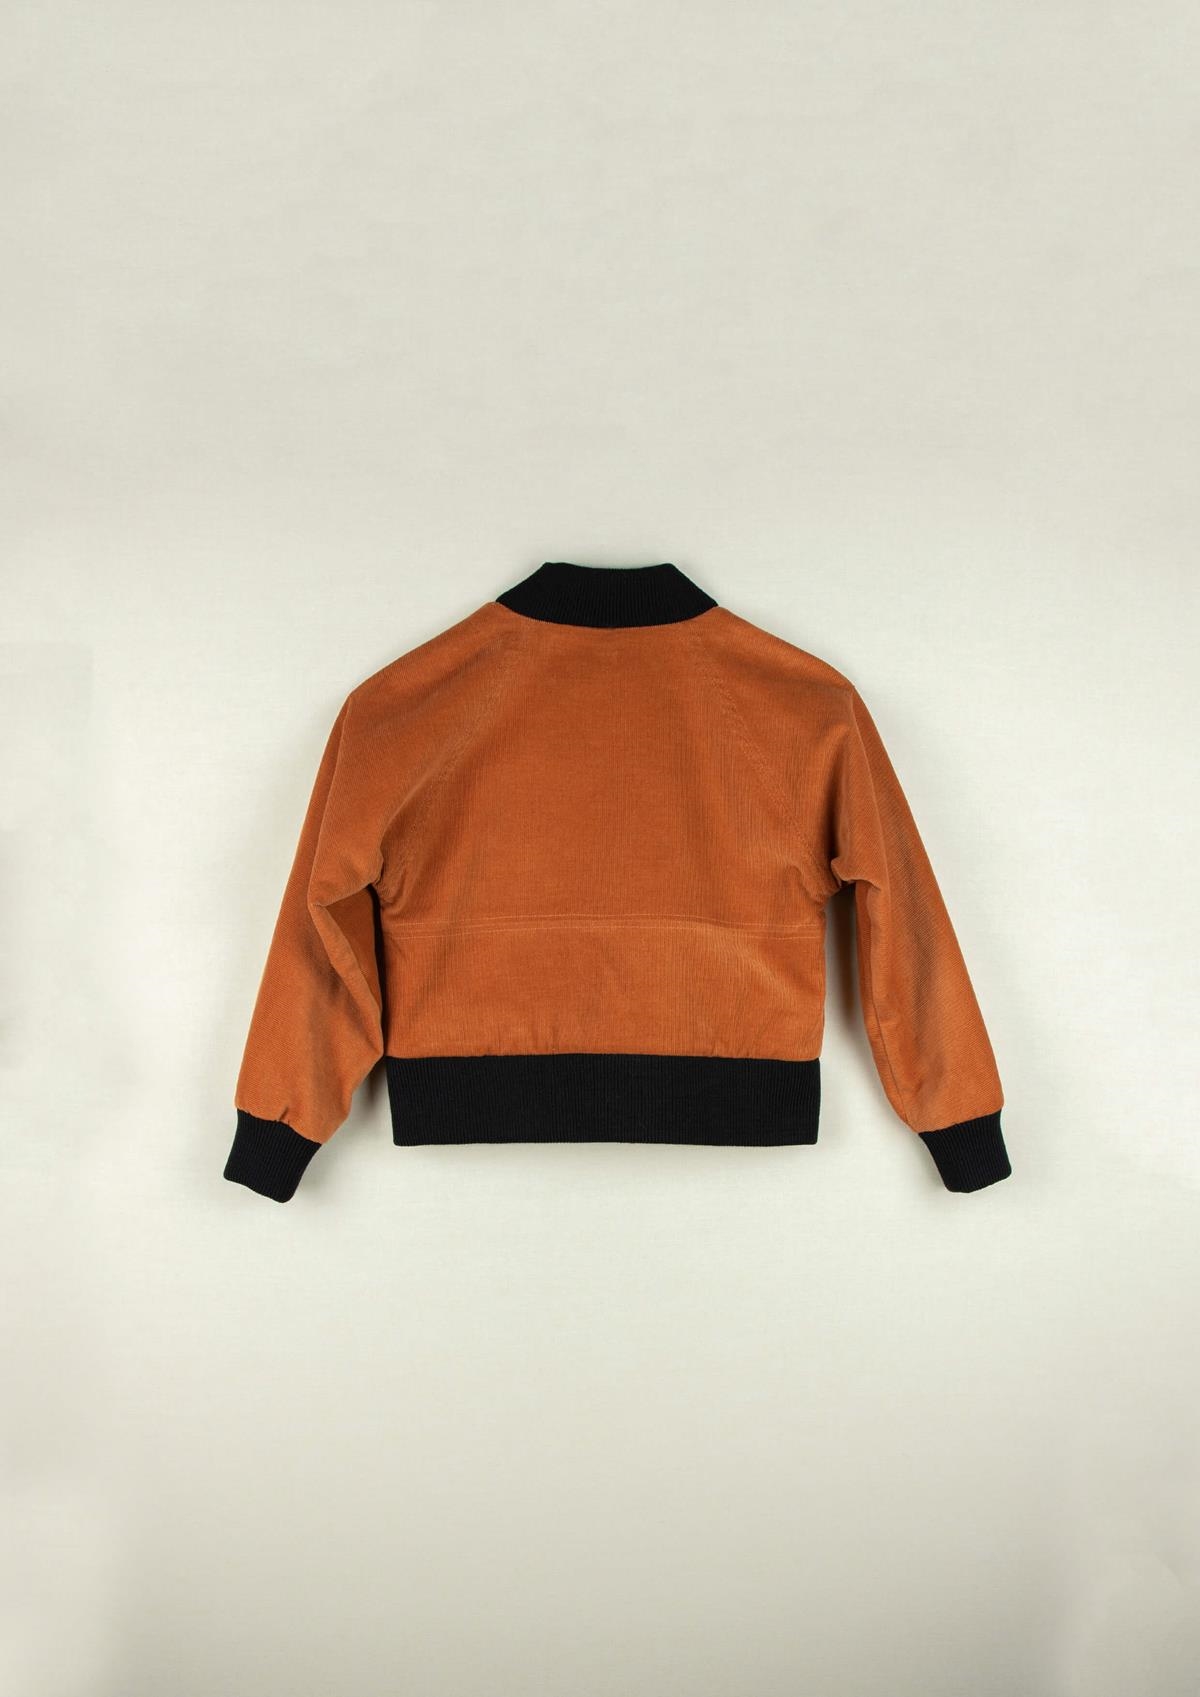 Mod.33.3 Orange knitted jacket | AW20.21 Mod.33.3 Orange knitted jacket | 1